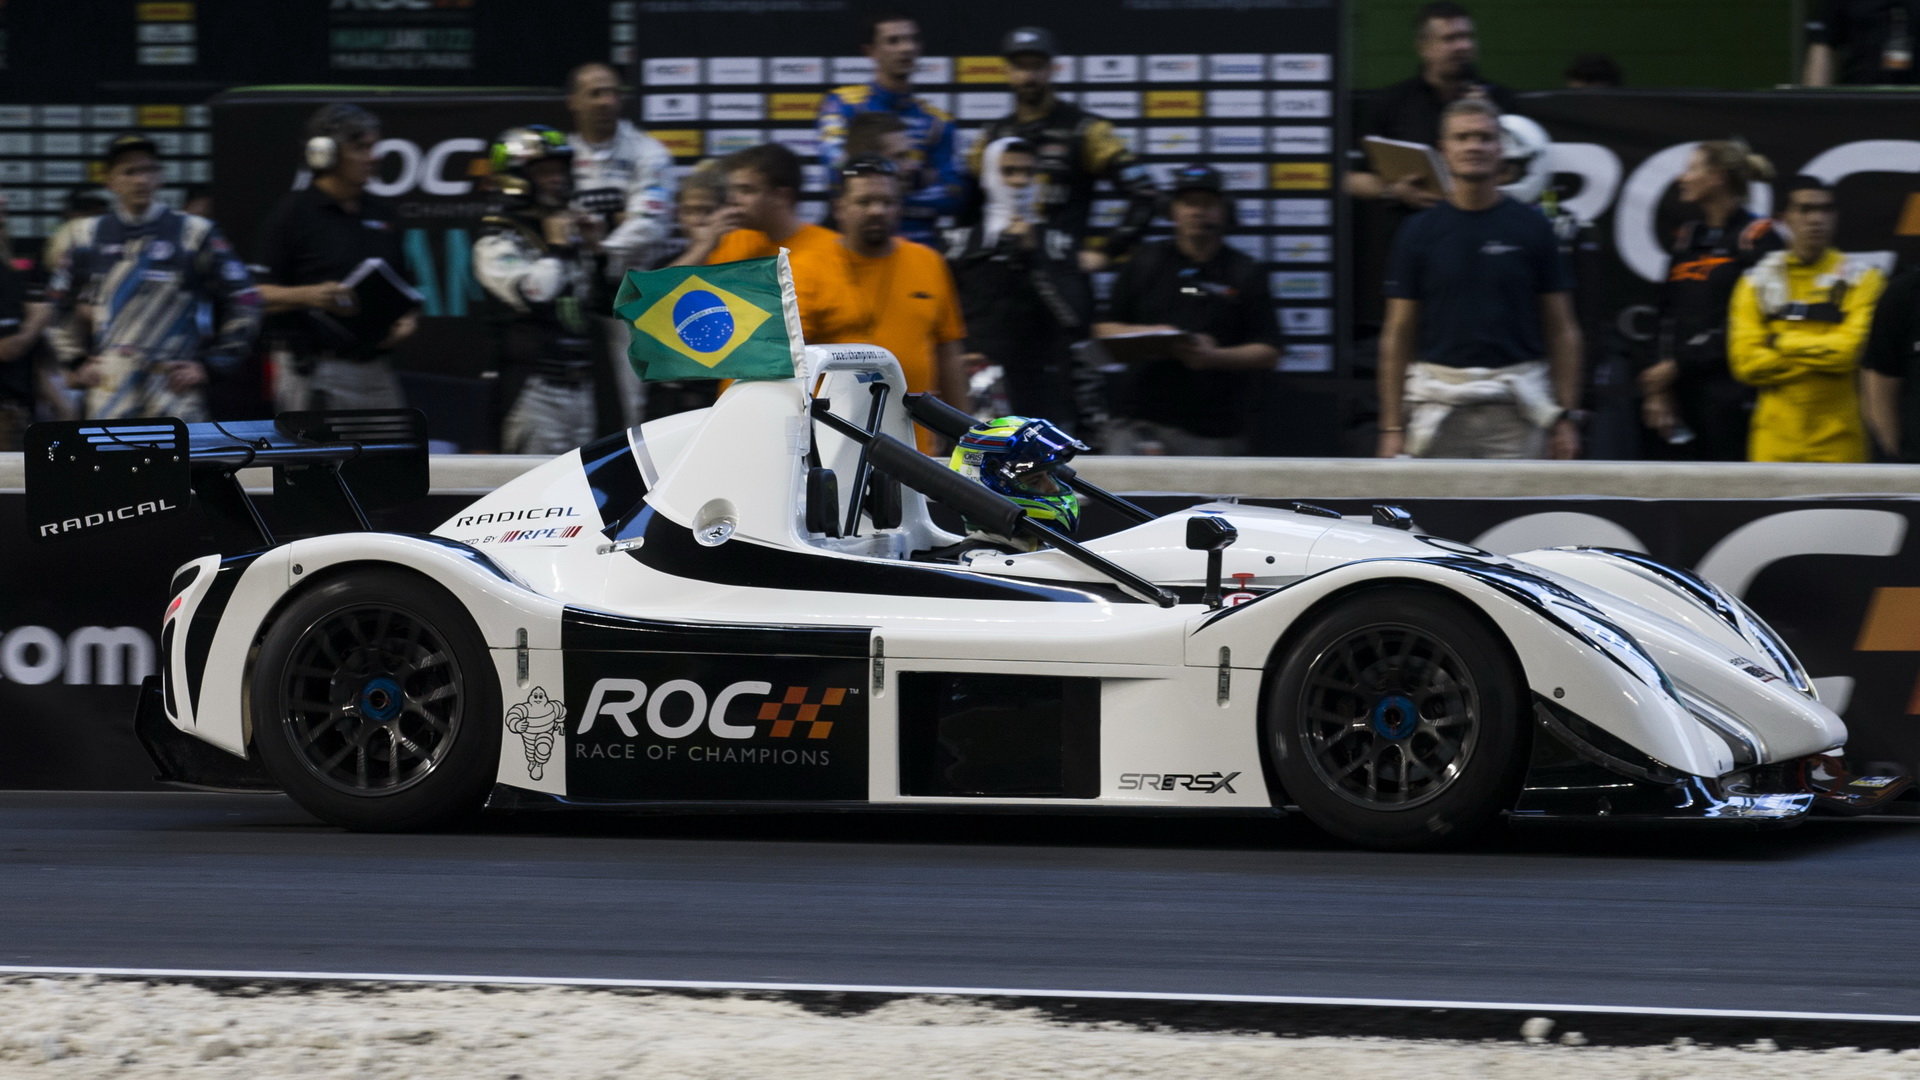 Závod šampionů 2017 v Miami - Massa v akci